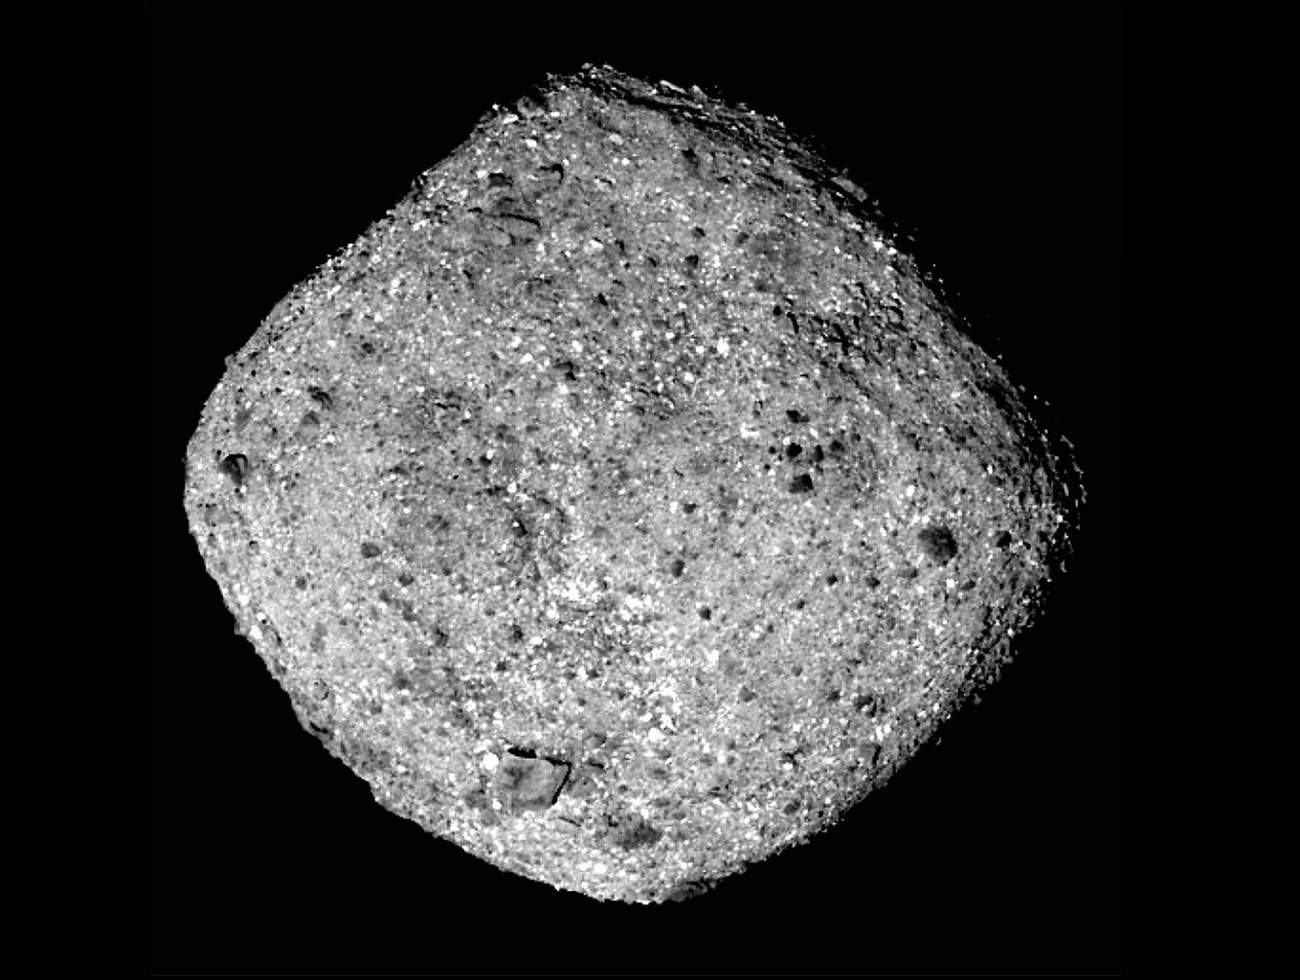 Asteroida Bennu nie jest tym, na co wygląda. Zaskakujące ustalenia naukowców